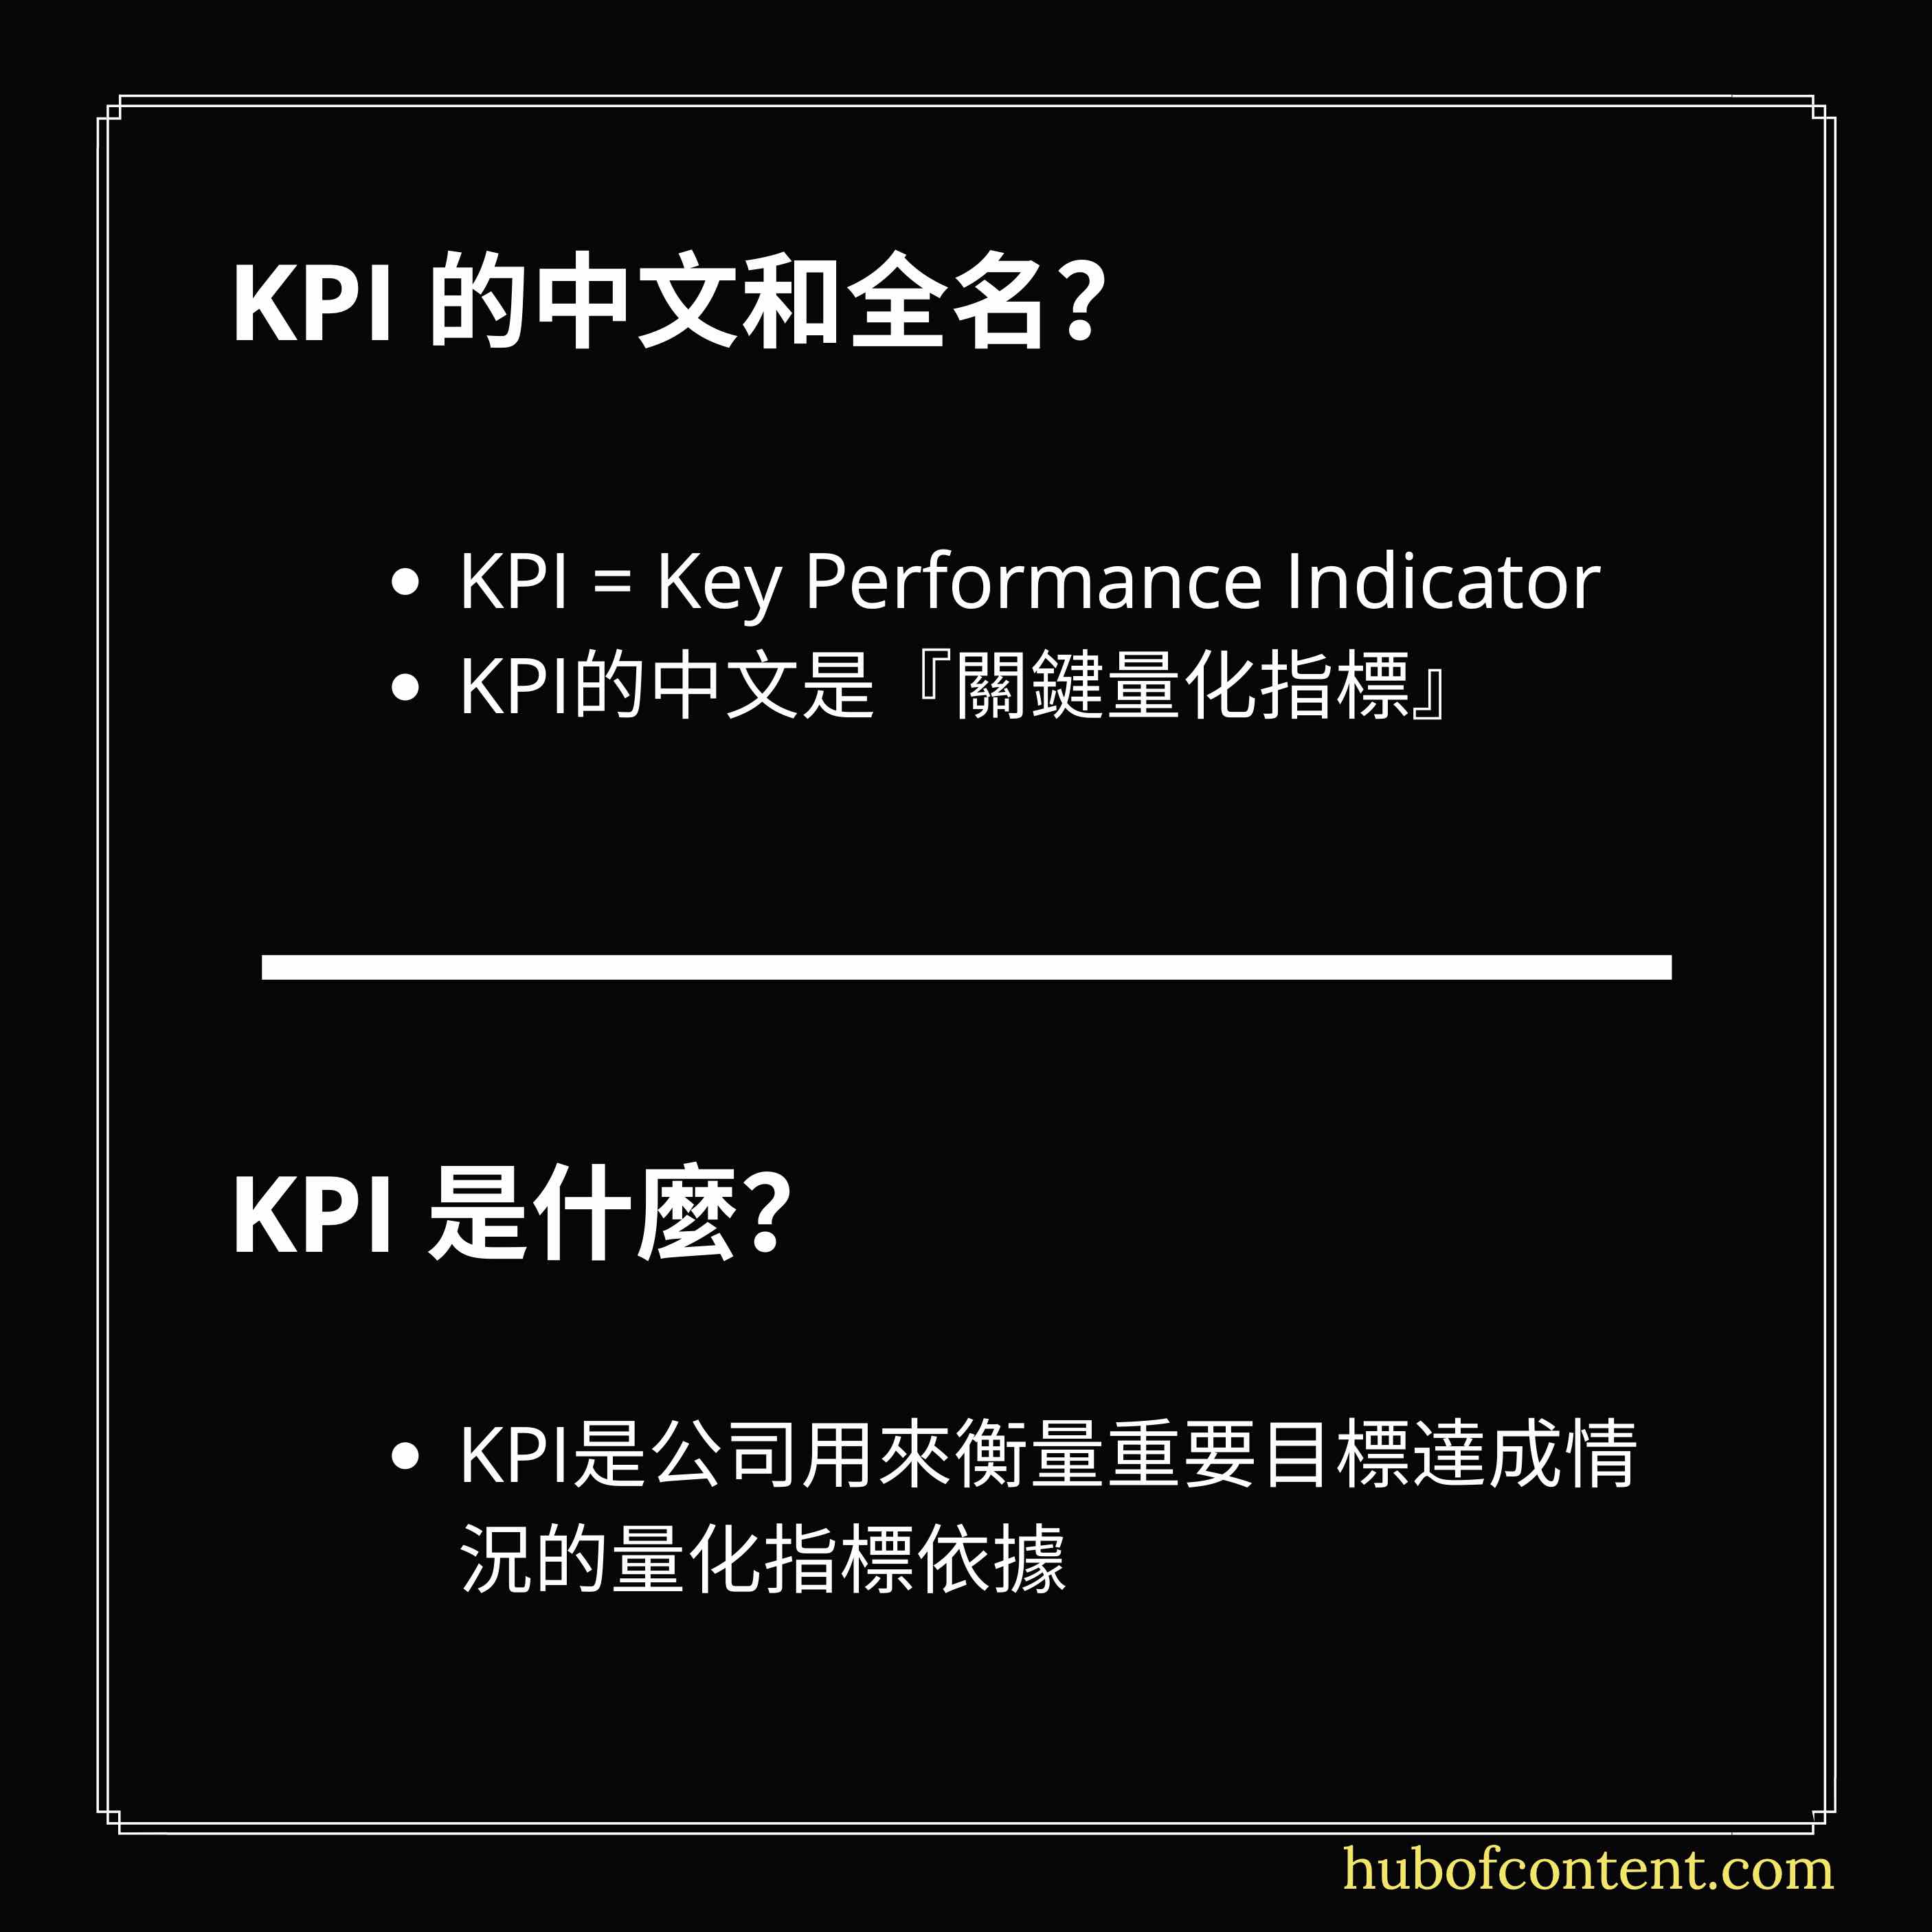 KPI的中文和全名